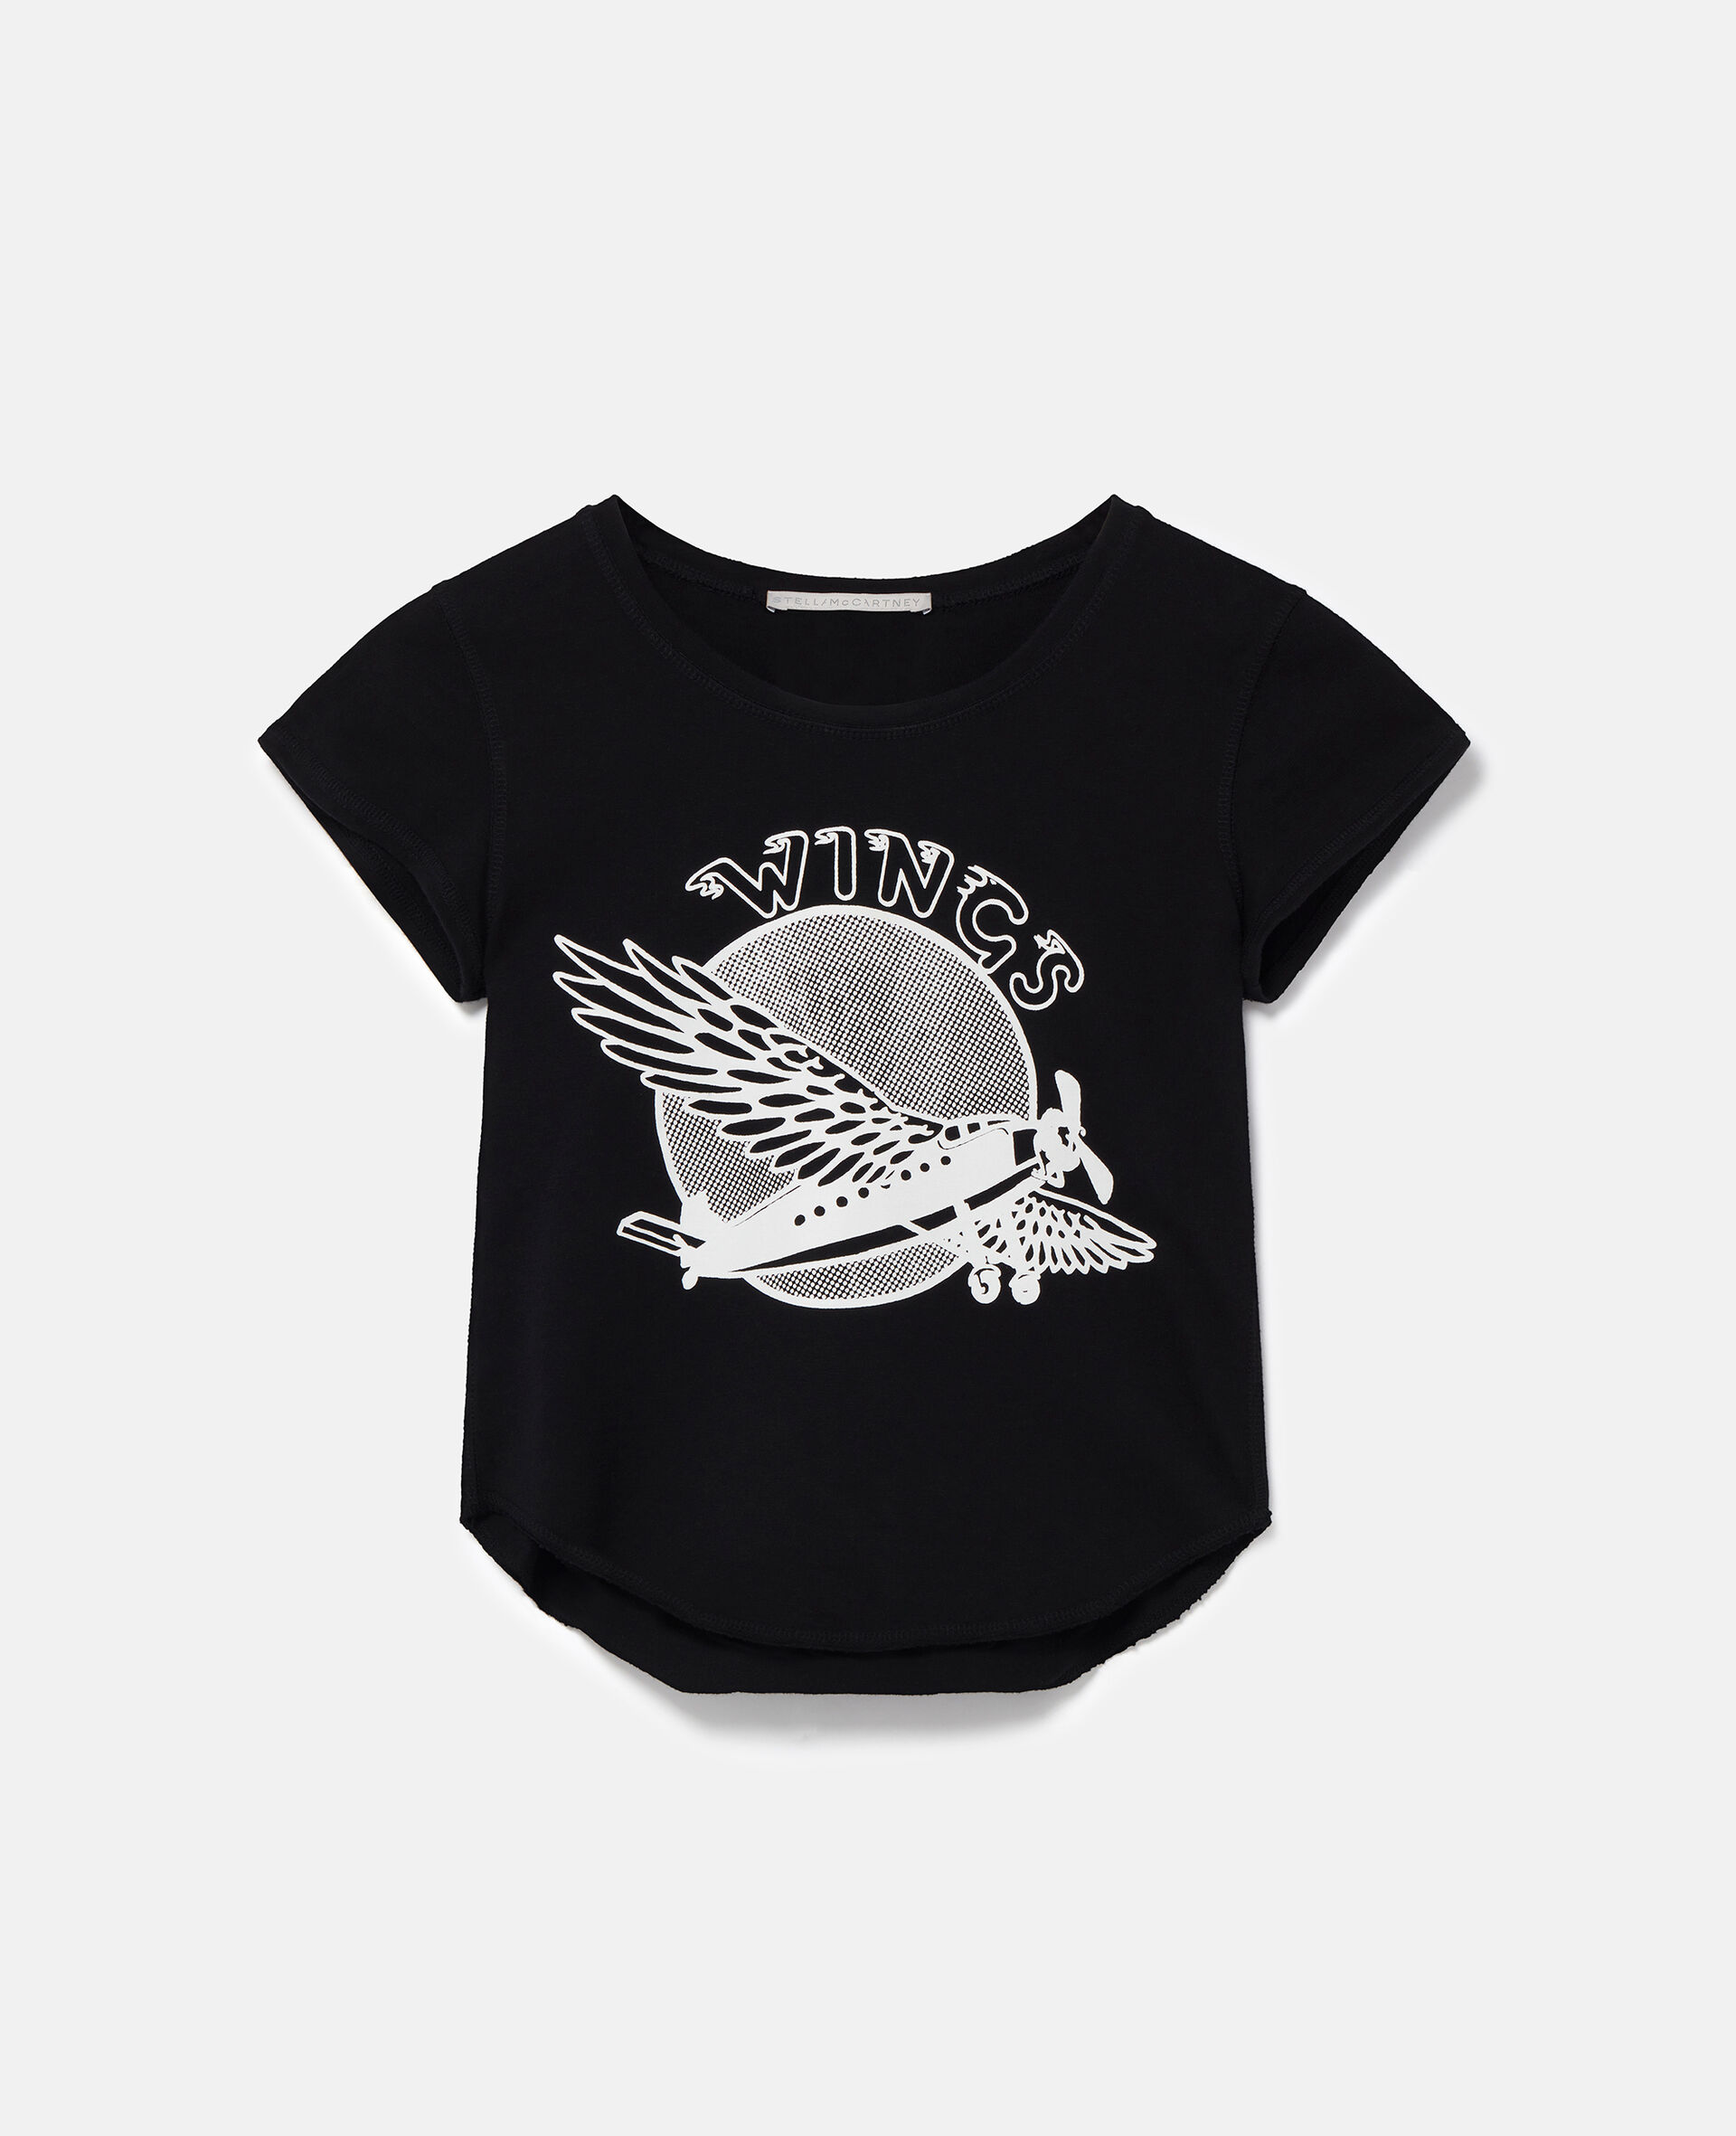 翅膀图案棉质婴儿T恤-黑色-medium